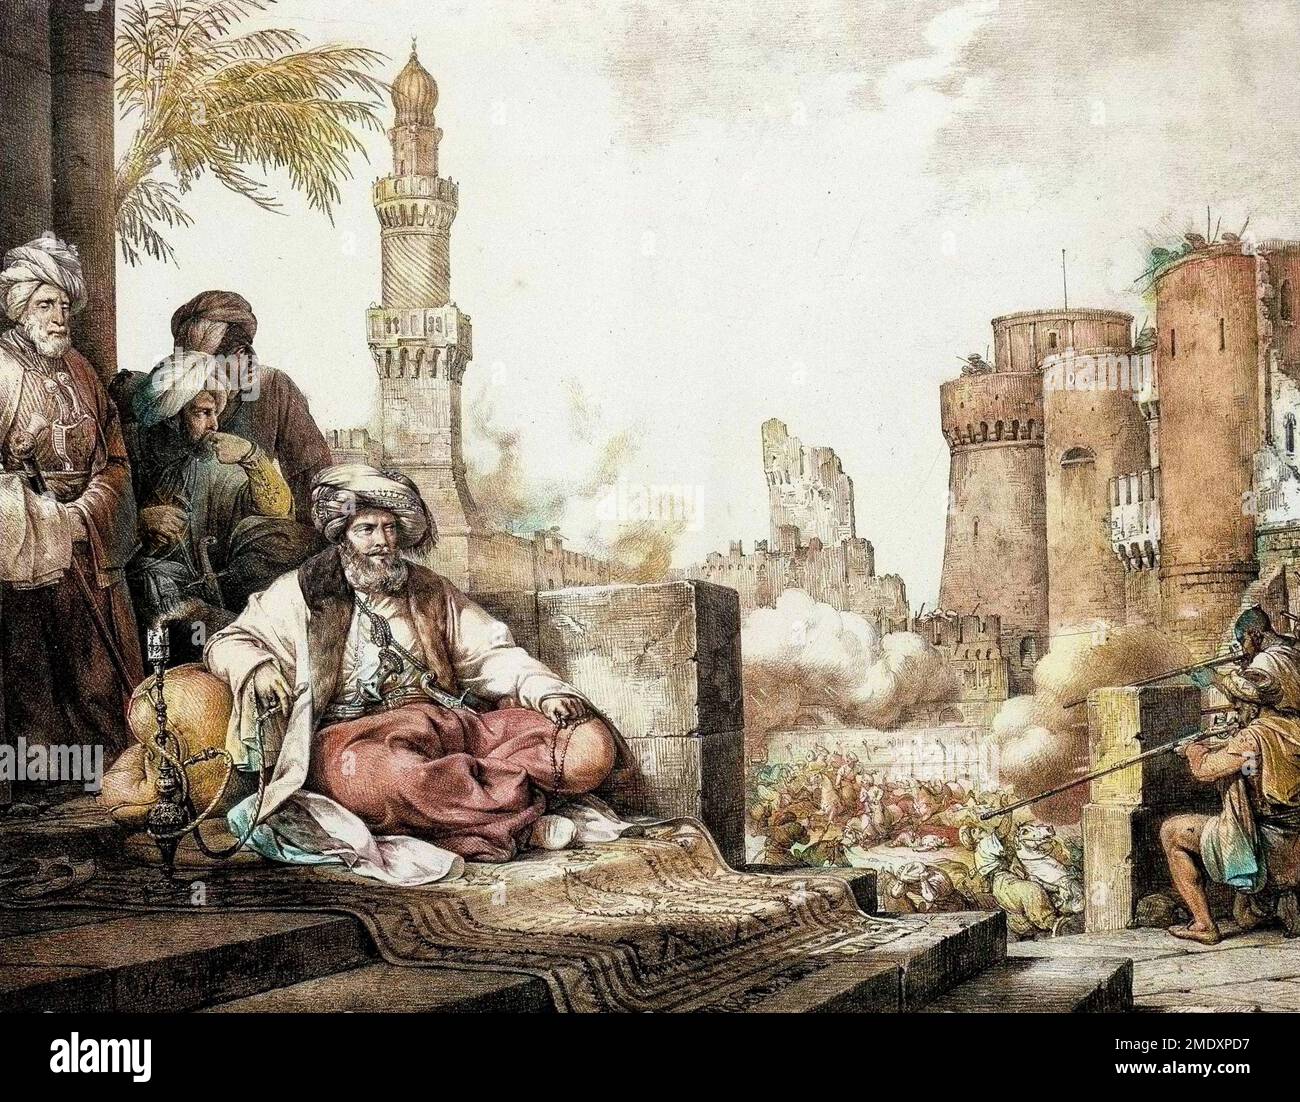 Le Massacre des mamelouks rebelles dans le Chateau du Caire en Egypte. Au Centre se trouve Mohamed Ali ou Mehemet Ali pasha (1769-1849), Vice roi d'Egypte. Gravure de 1819. "Voyage dans le Levant en 1817 - 1818". Paris Stockfoto